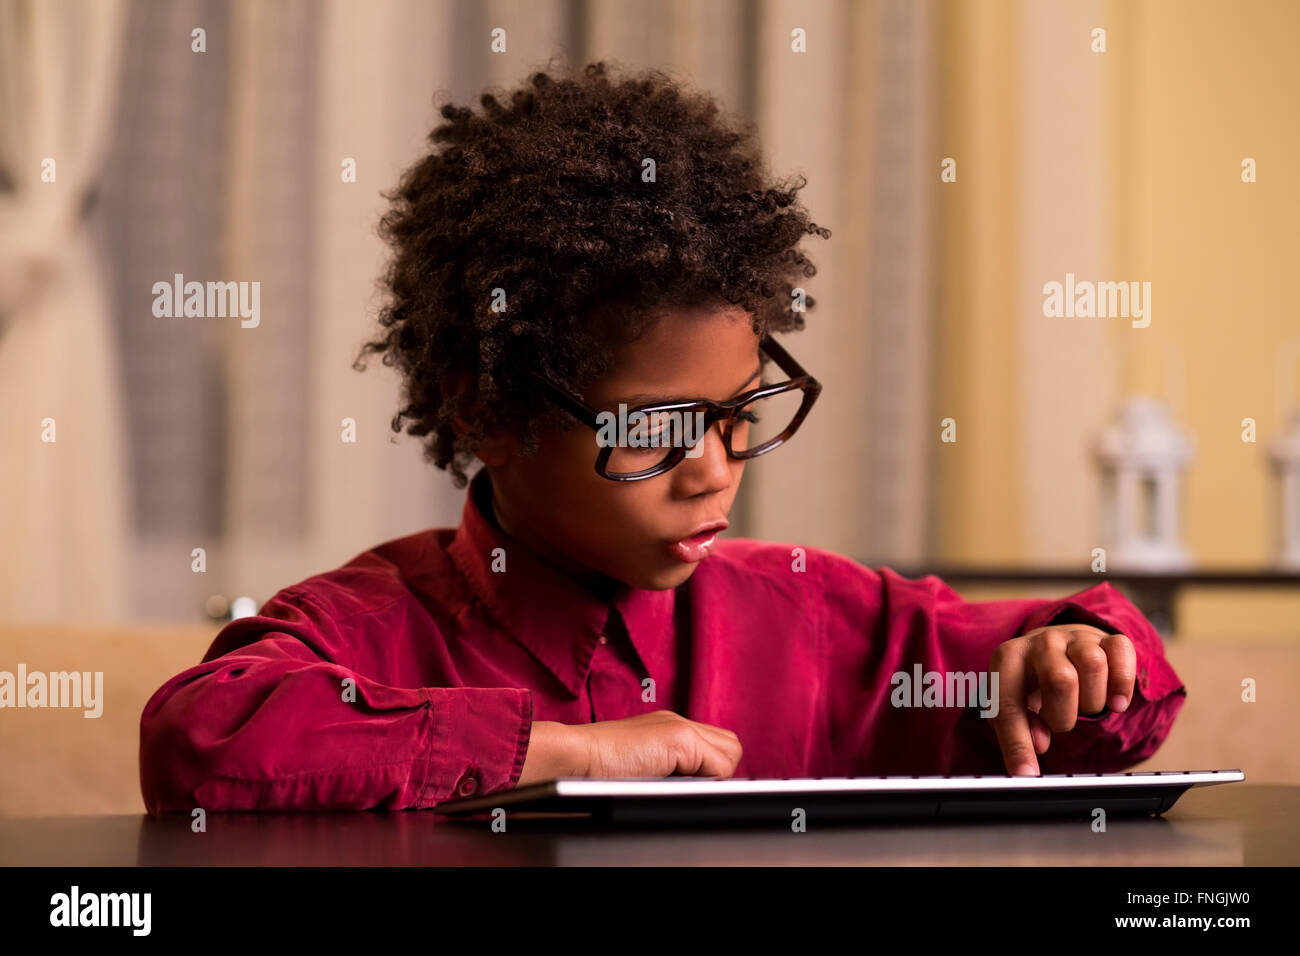 Afro boy using wireless keyboard. Stock Photo